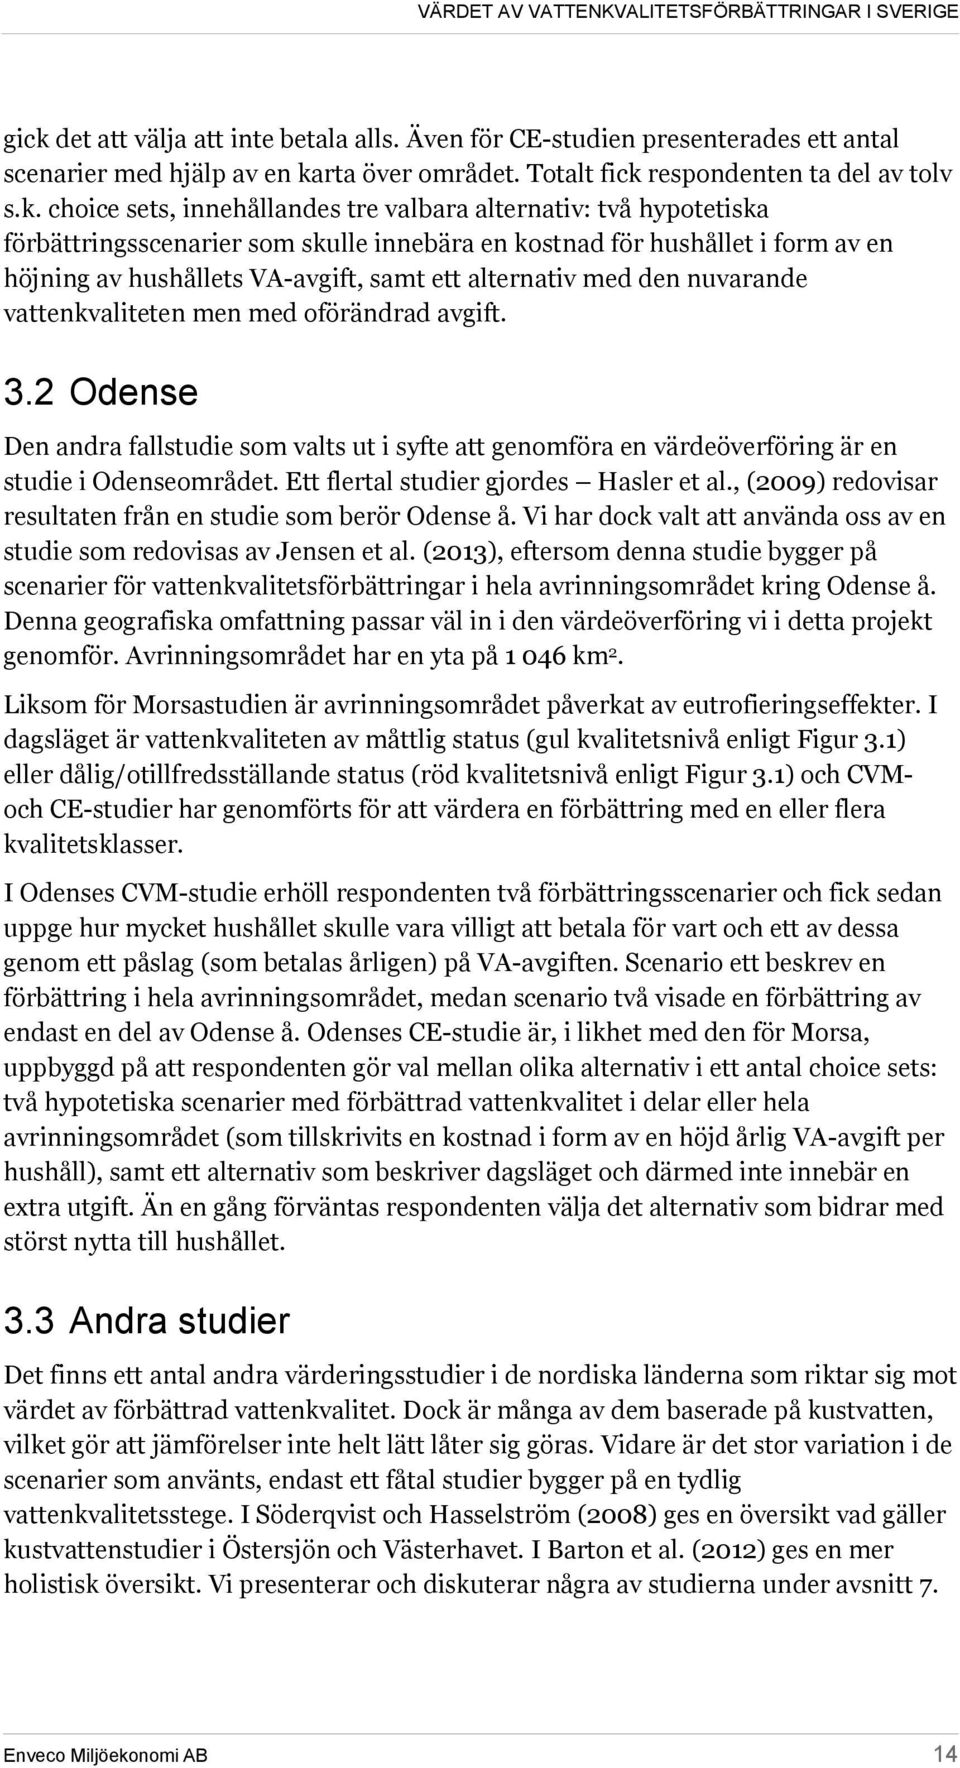 nuvarande vattenkvaliteten men med oförändrad avgift. 3.2 Odense Den andra fallstudie som valts ut i syfte att genomföra en värdeöverföring är en studie i Odenseområdet.